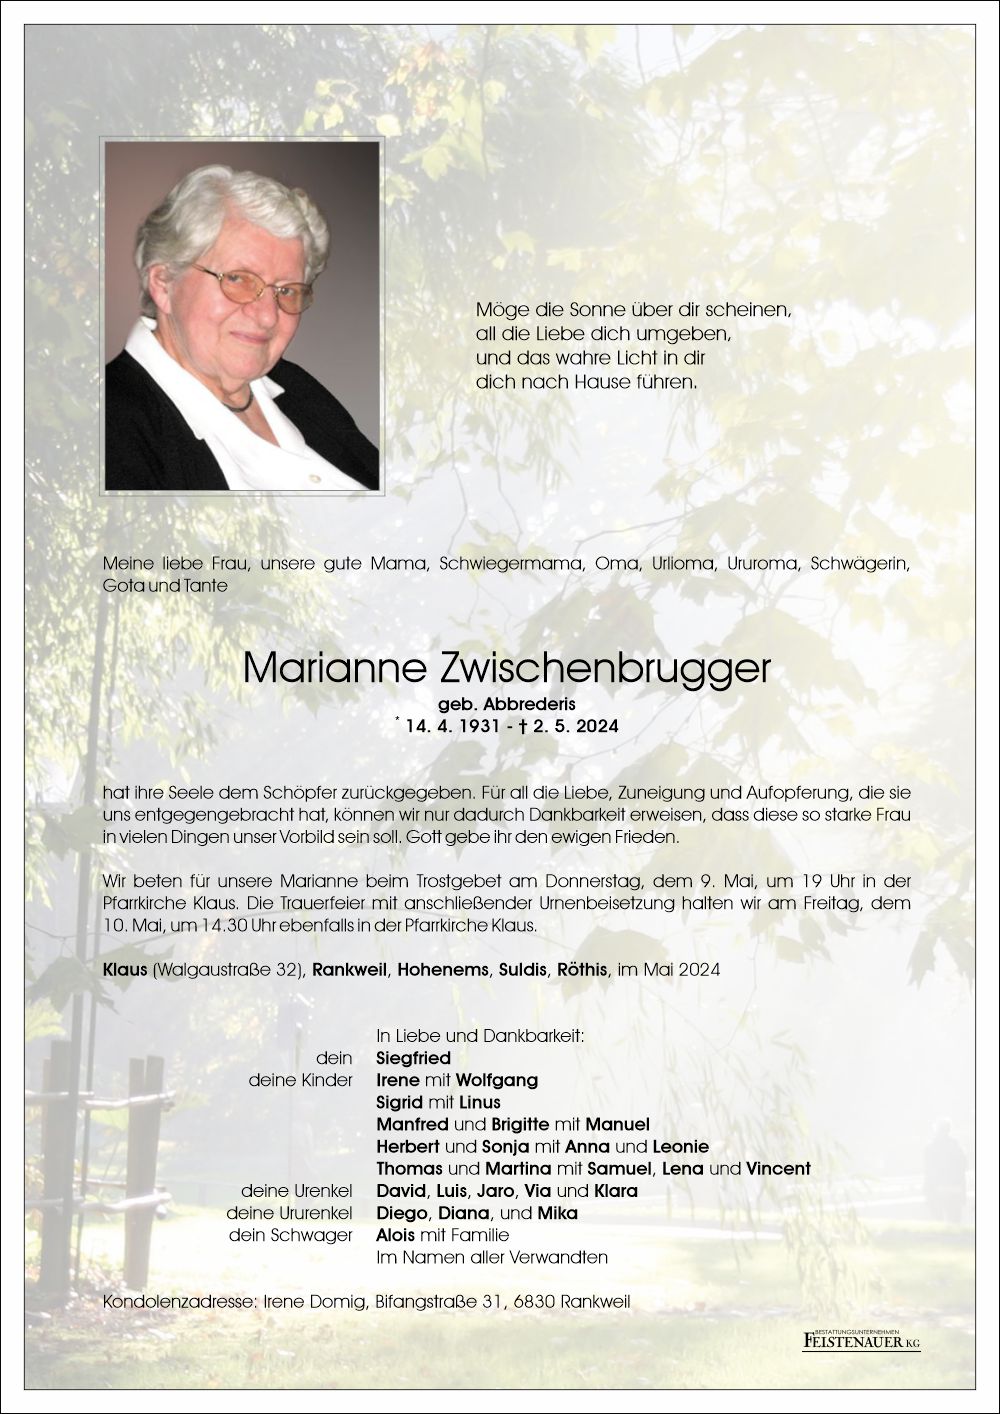 Marianne  Zwischenbrugger